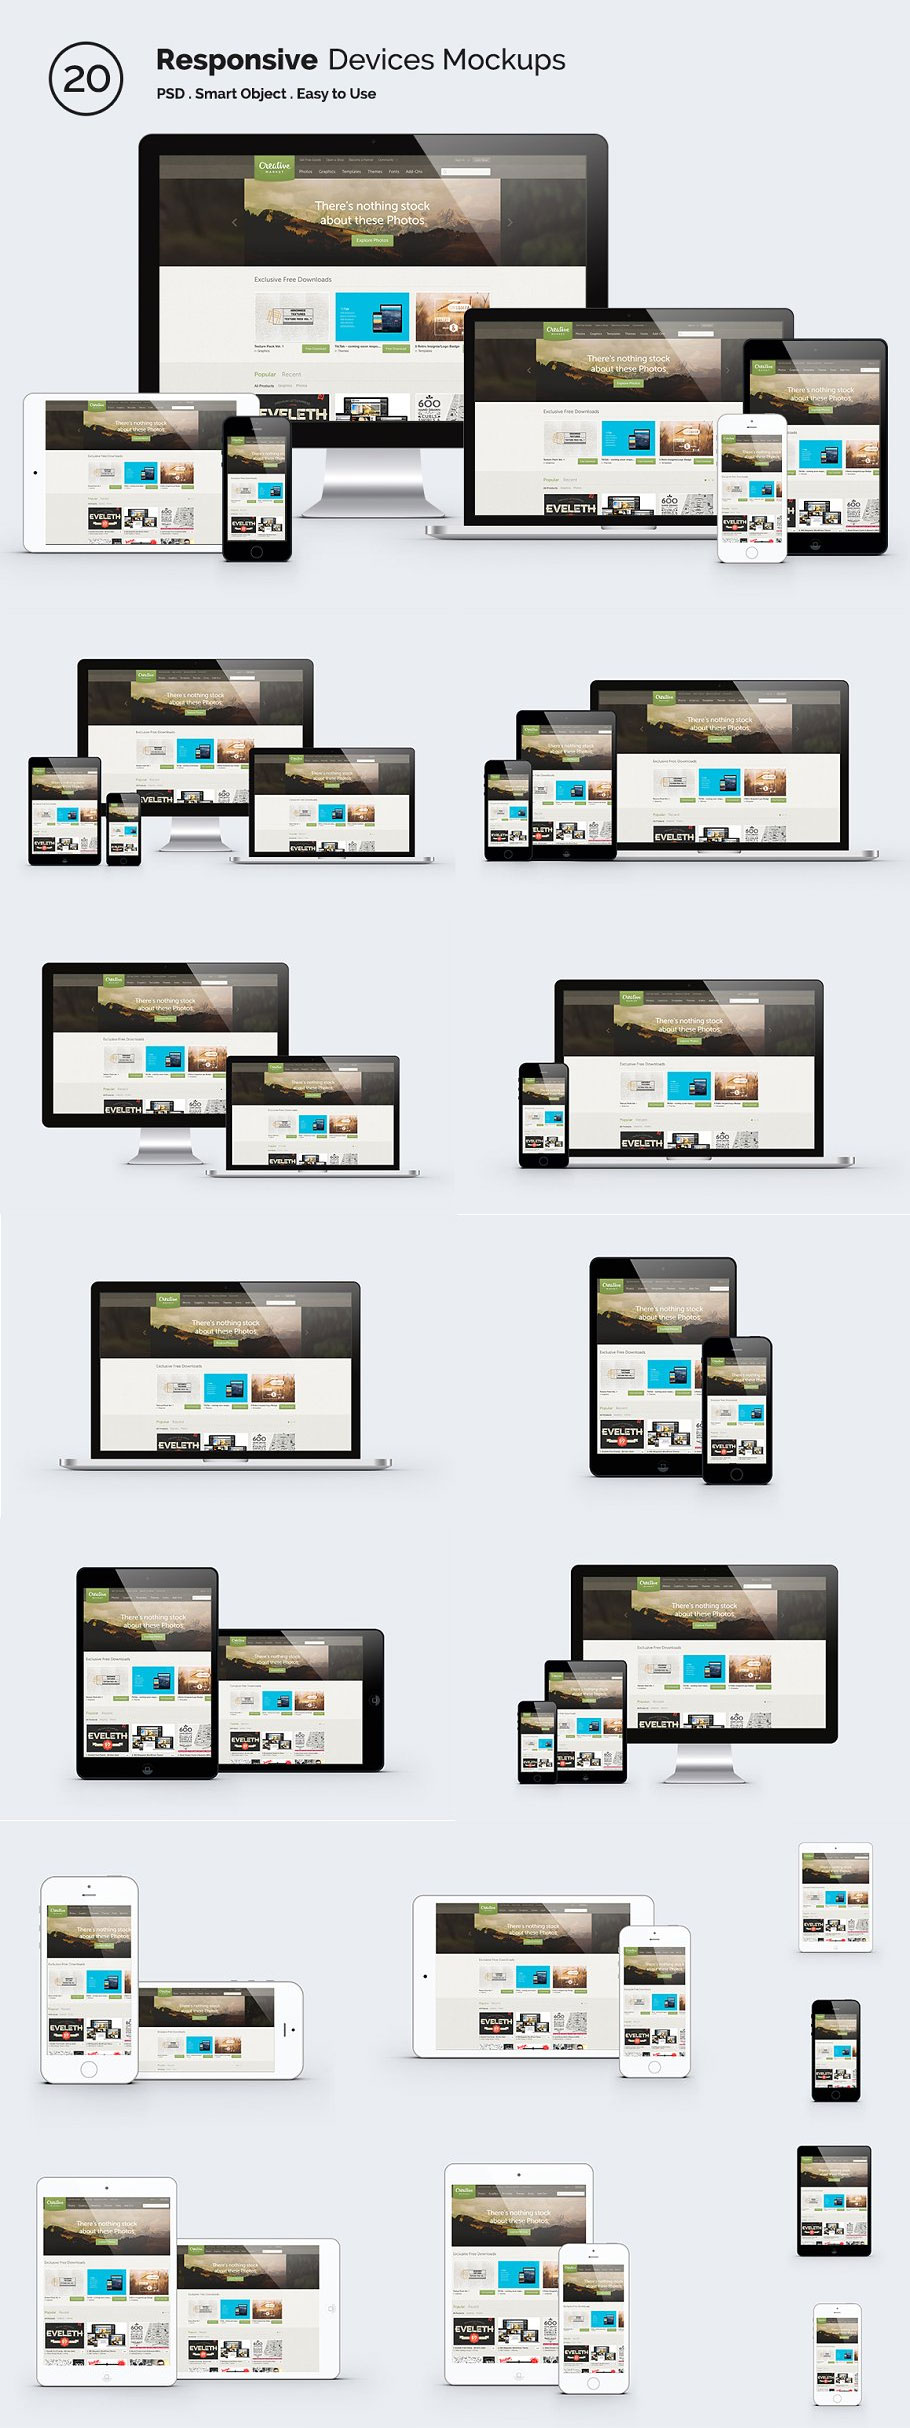 响应式网站设计展示模型样机 Responsive Screen Mockup Devices